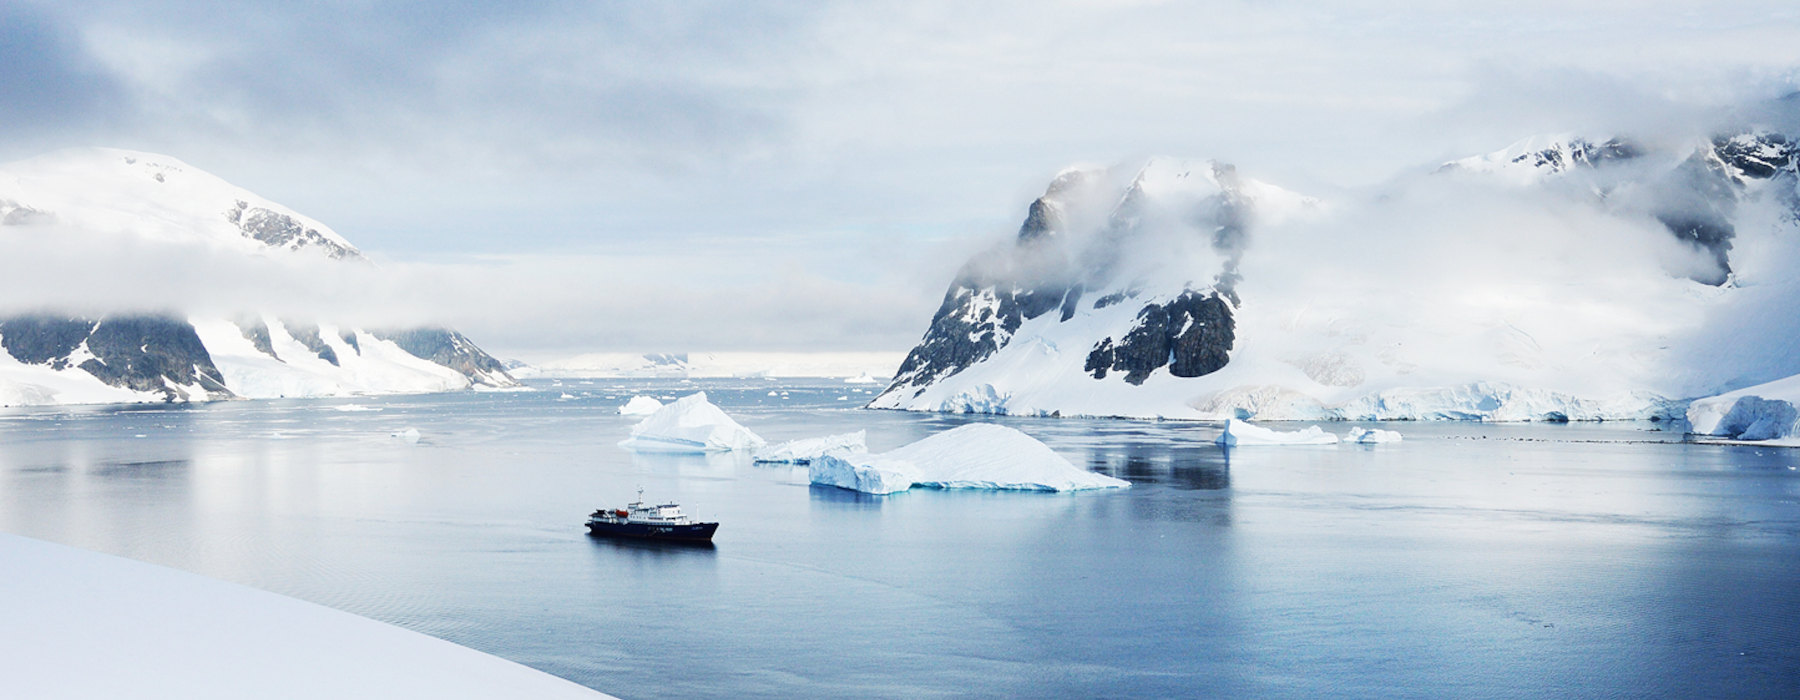 All our Antarctica<br class="hidden-md hidden-lg" /> Solo Travel